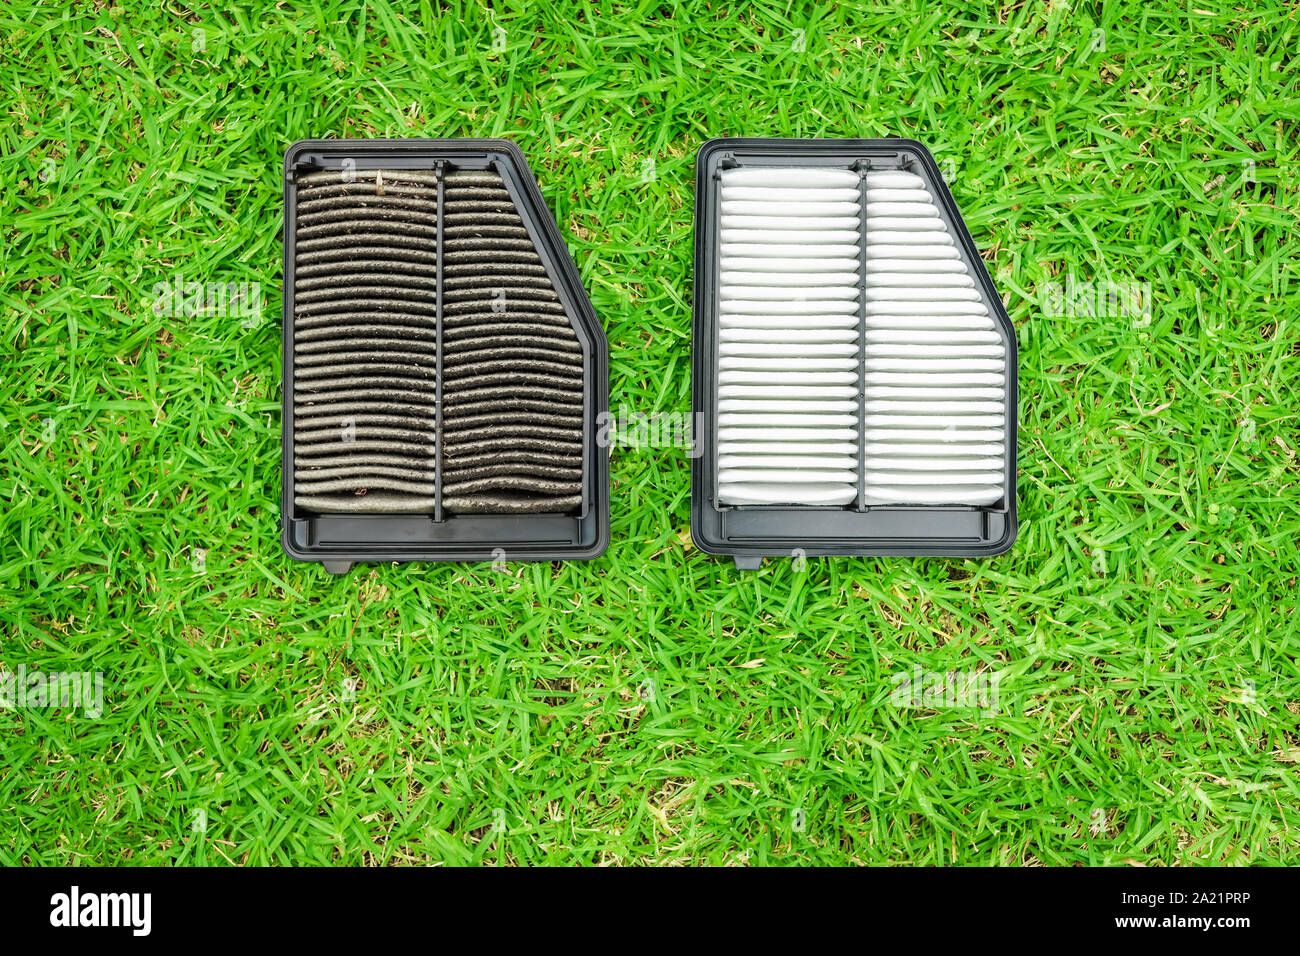 Schmutzig und neues Auto Luftfilter nebeneinander auf grünem Gras  Stockfotografie - Alamy